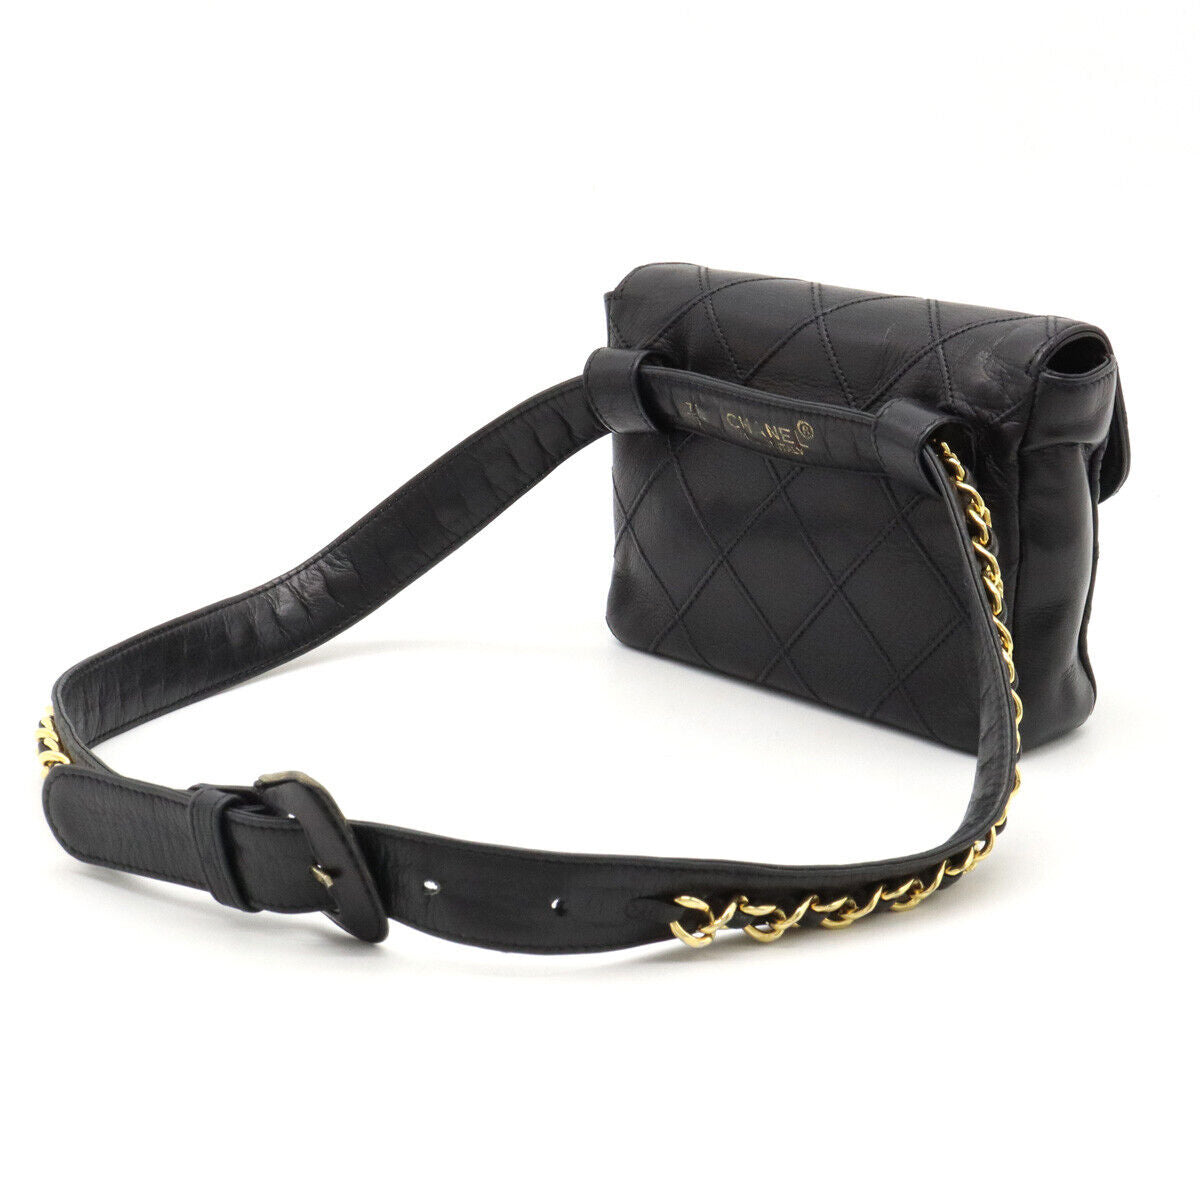 Vintage Chanel Belt Bag Bum Bag Lambskin Leather Black